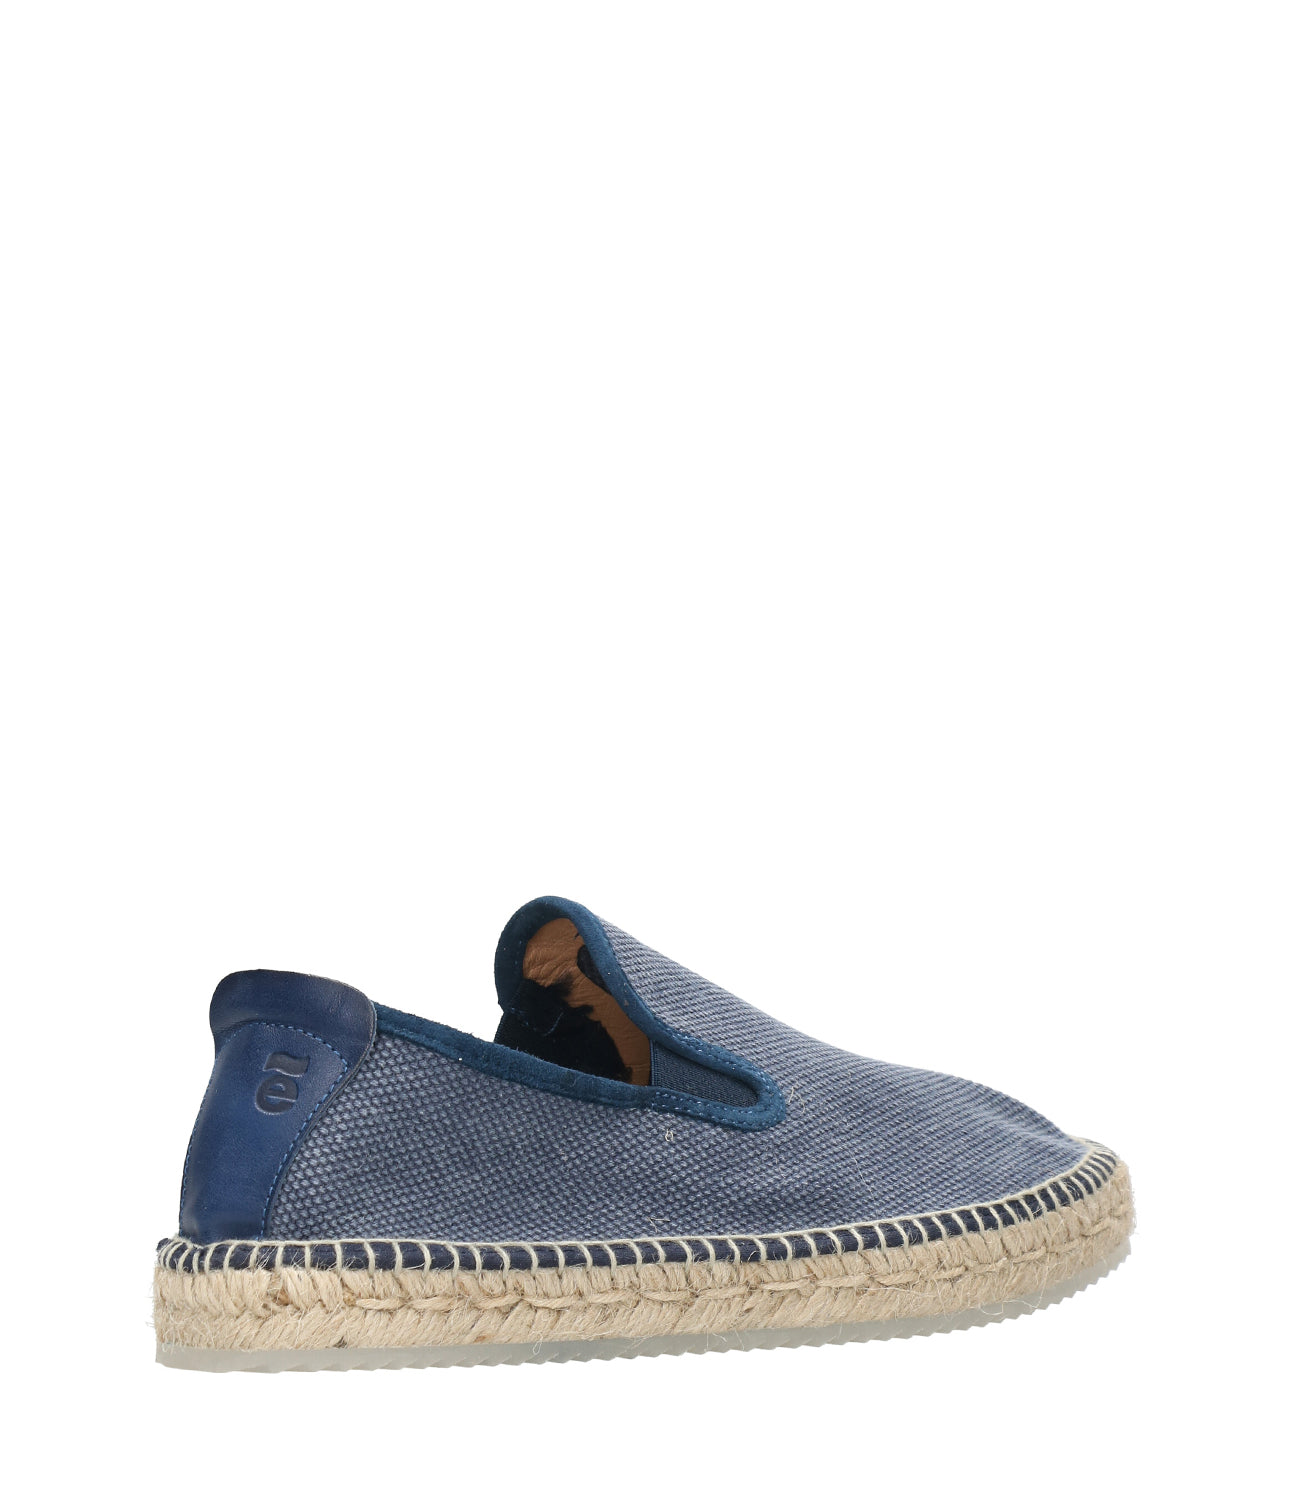 Espadrilles | Vanni Shoe 2979 Navy Blue